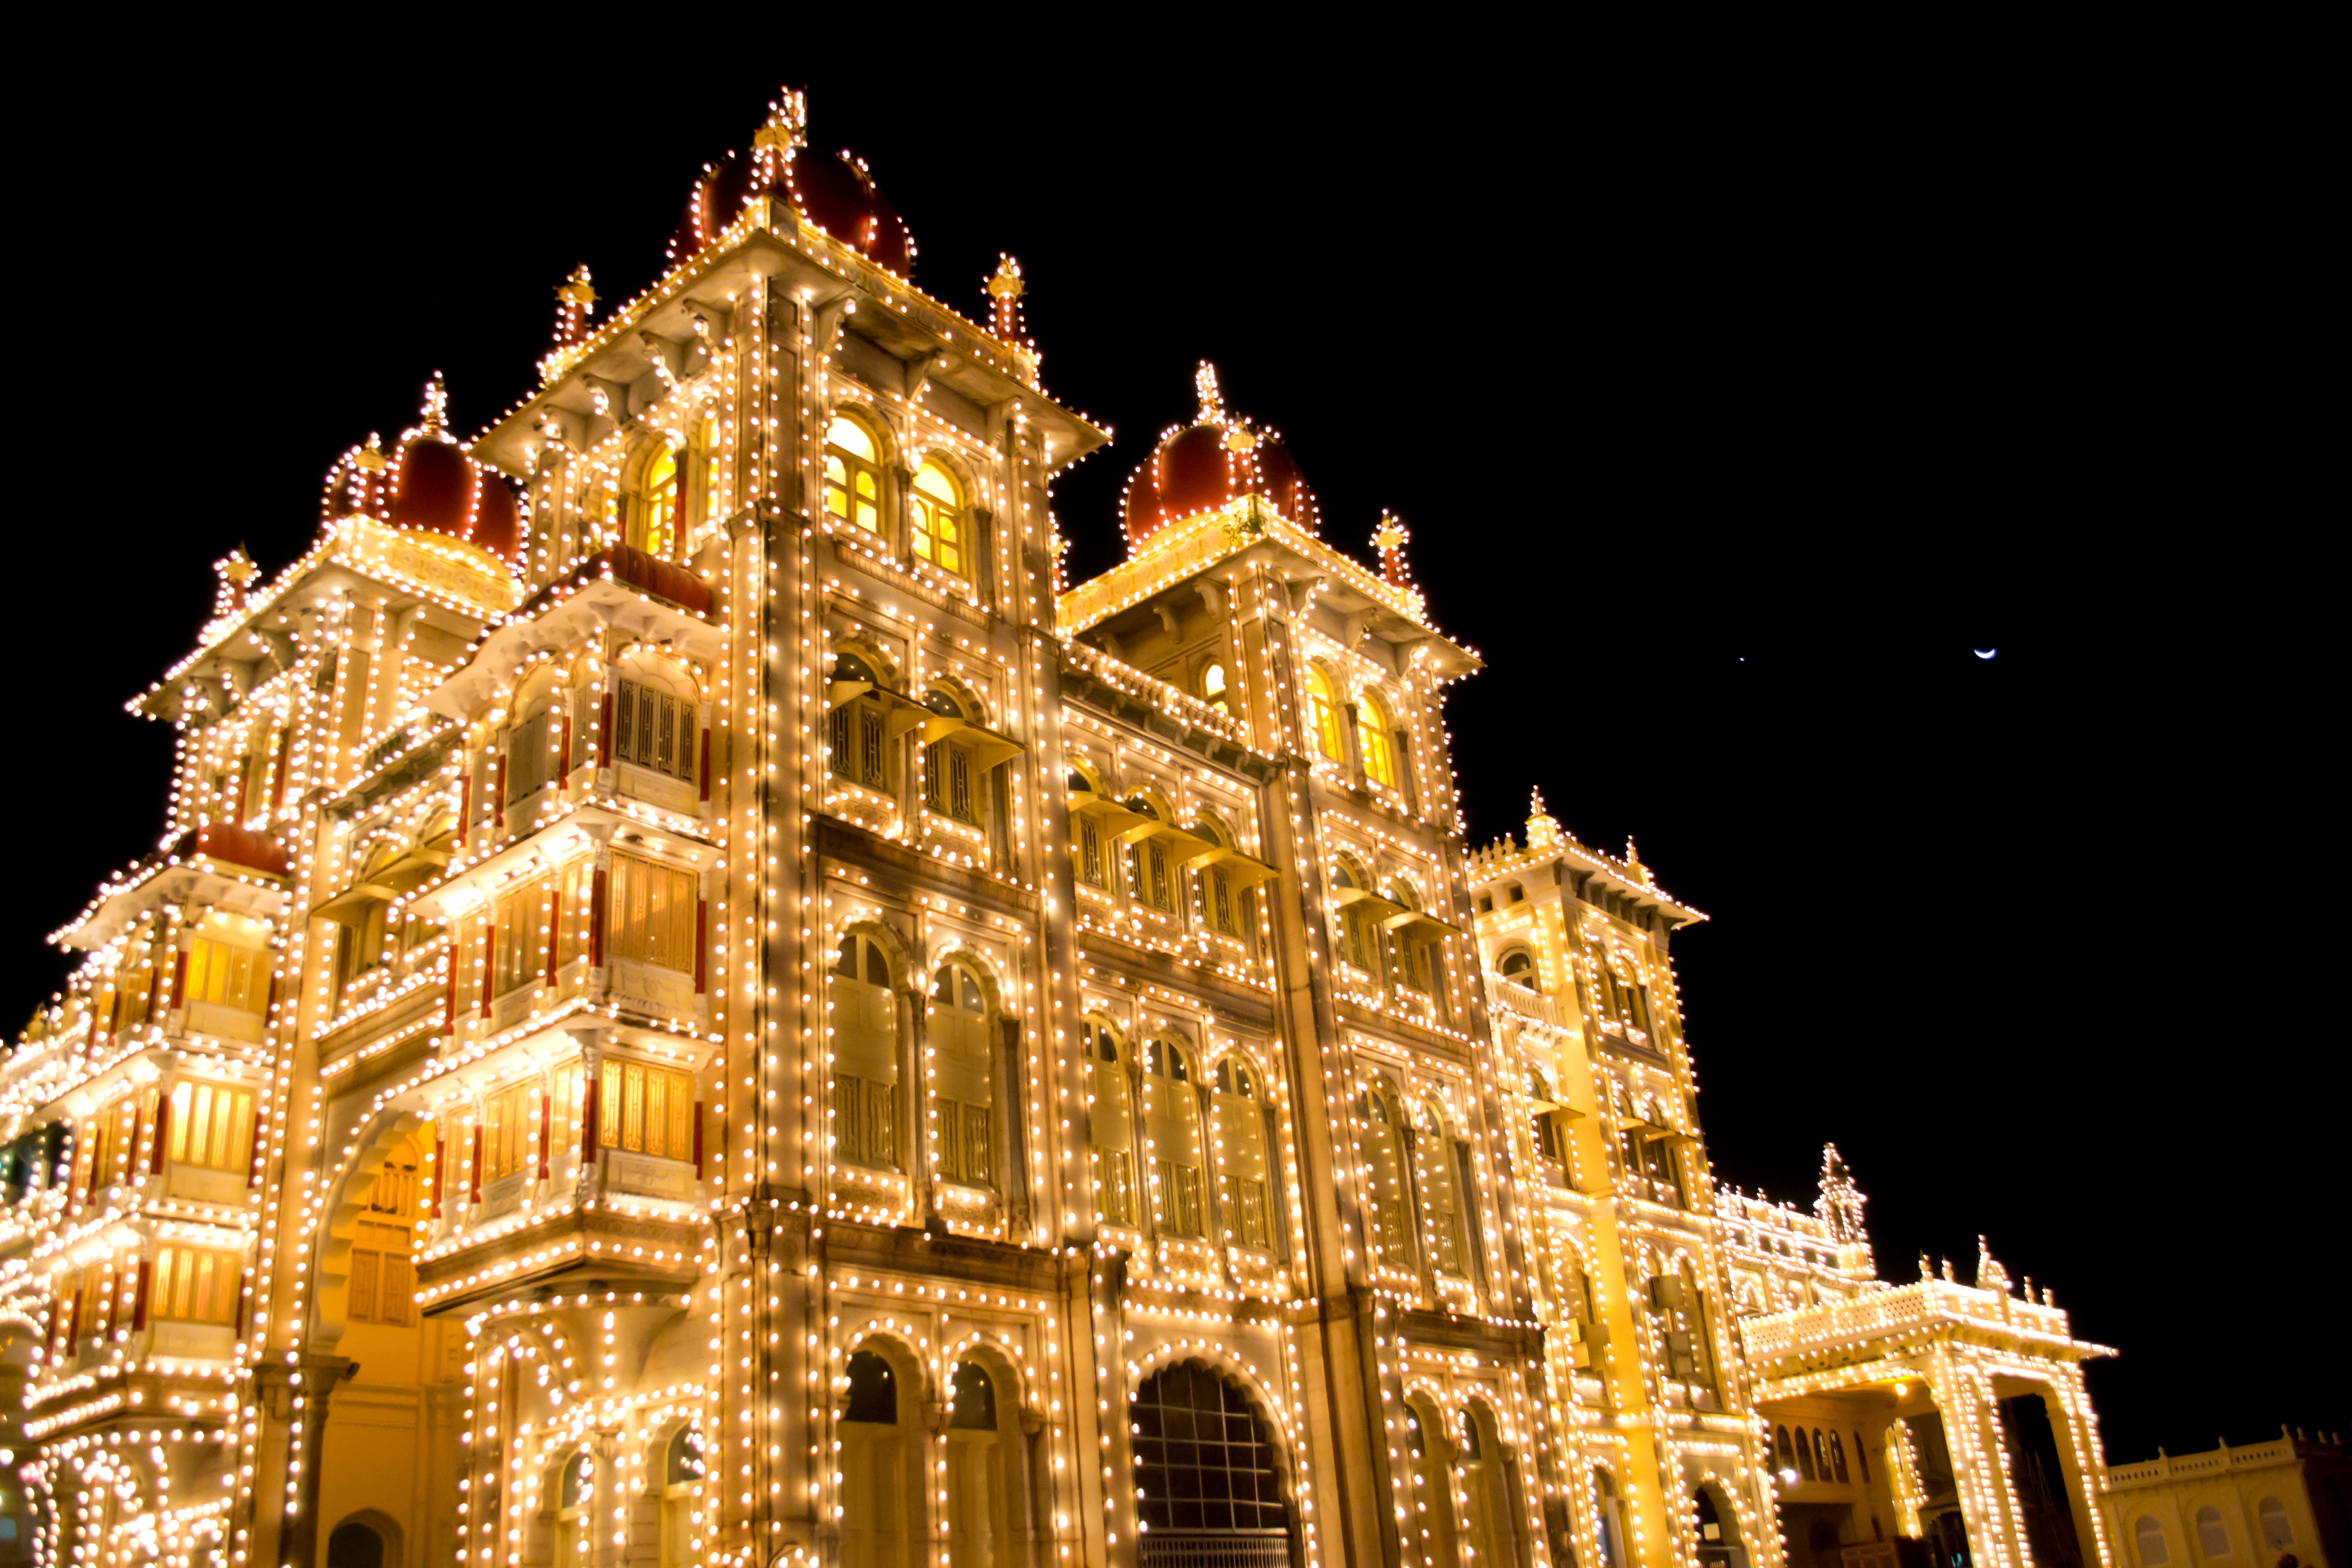 Mysore Palace,Karnataka State,India